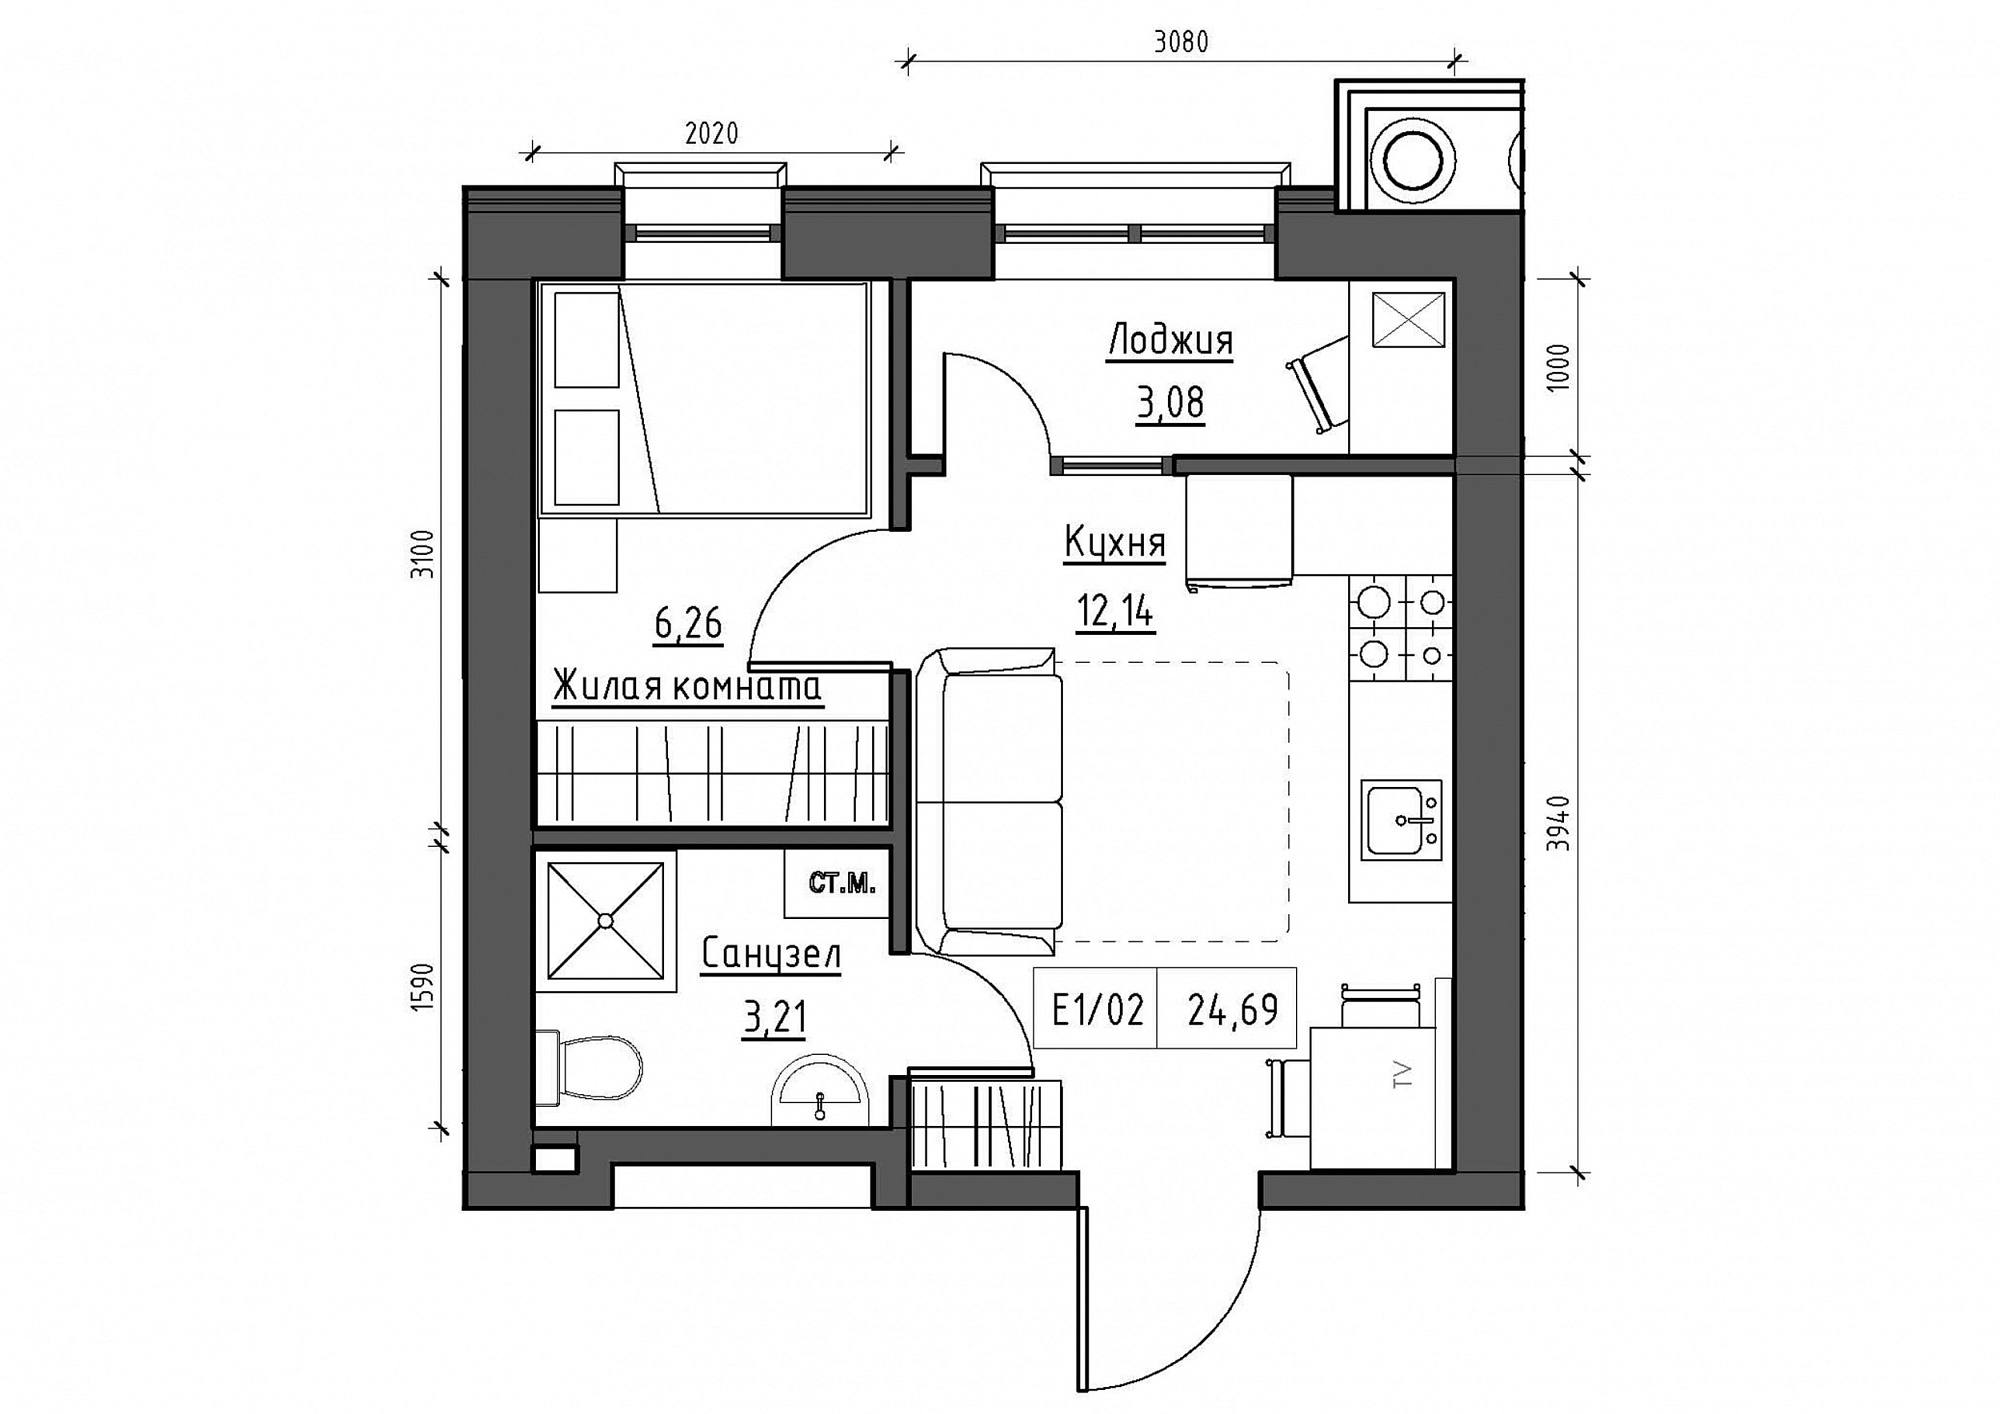 Планировка 1-к квартира площей 24.69м2, KS-011-04/0014.